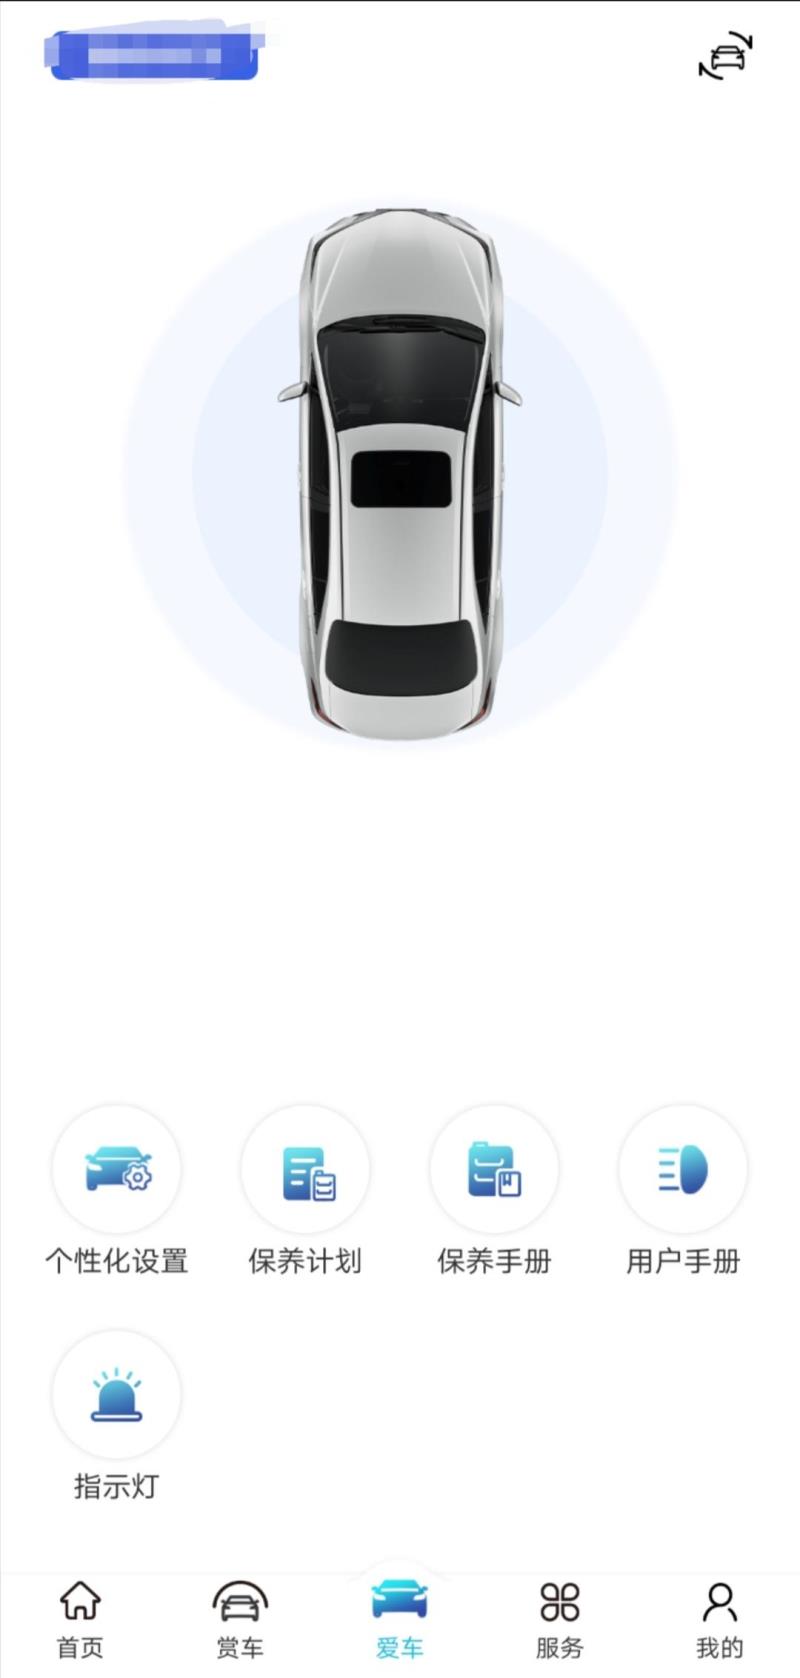 卡罗拉，问丰田app上面别人的都显示车辆信息，功能很多，这个就干巴巴的啥也没有